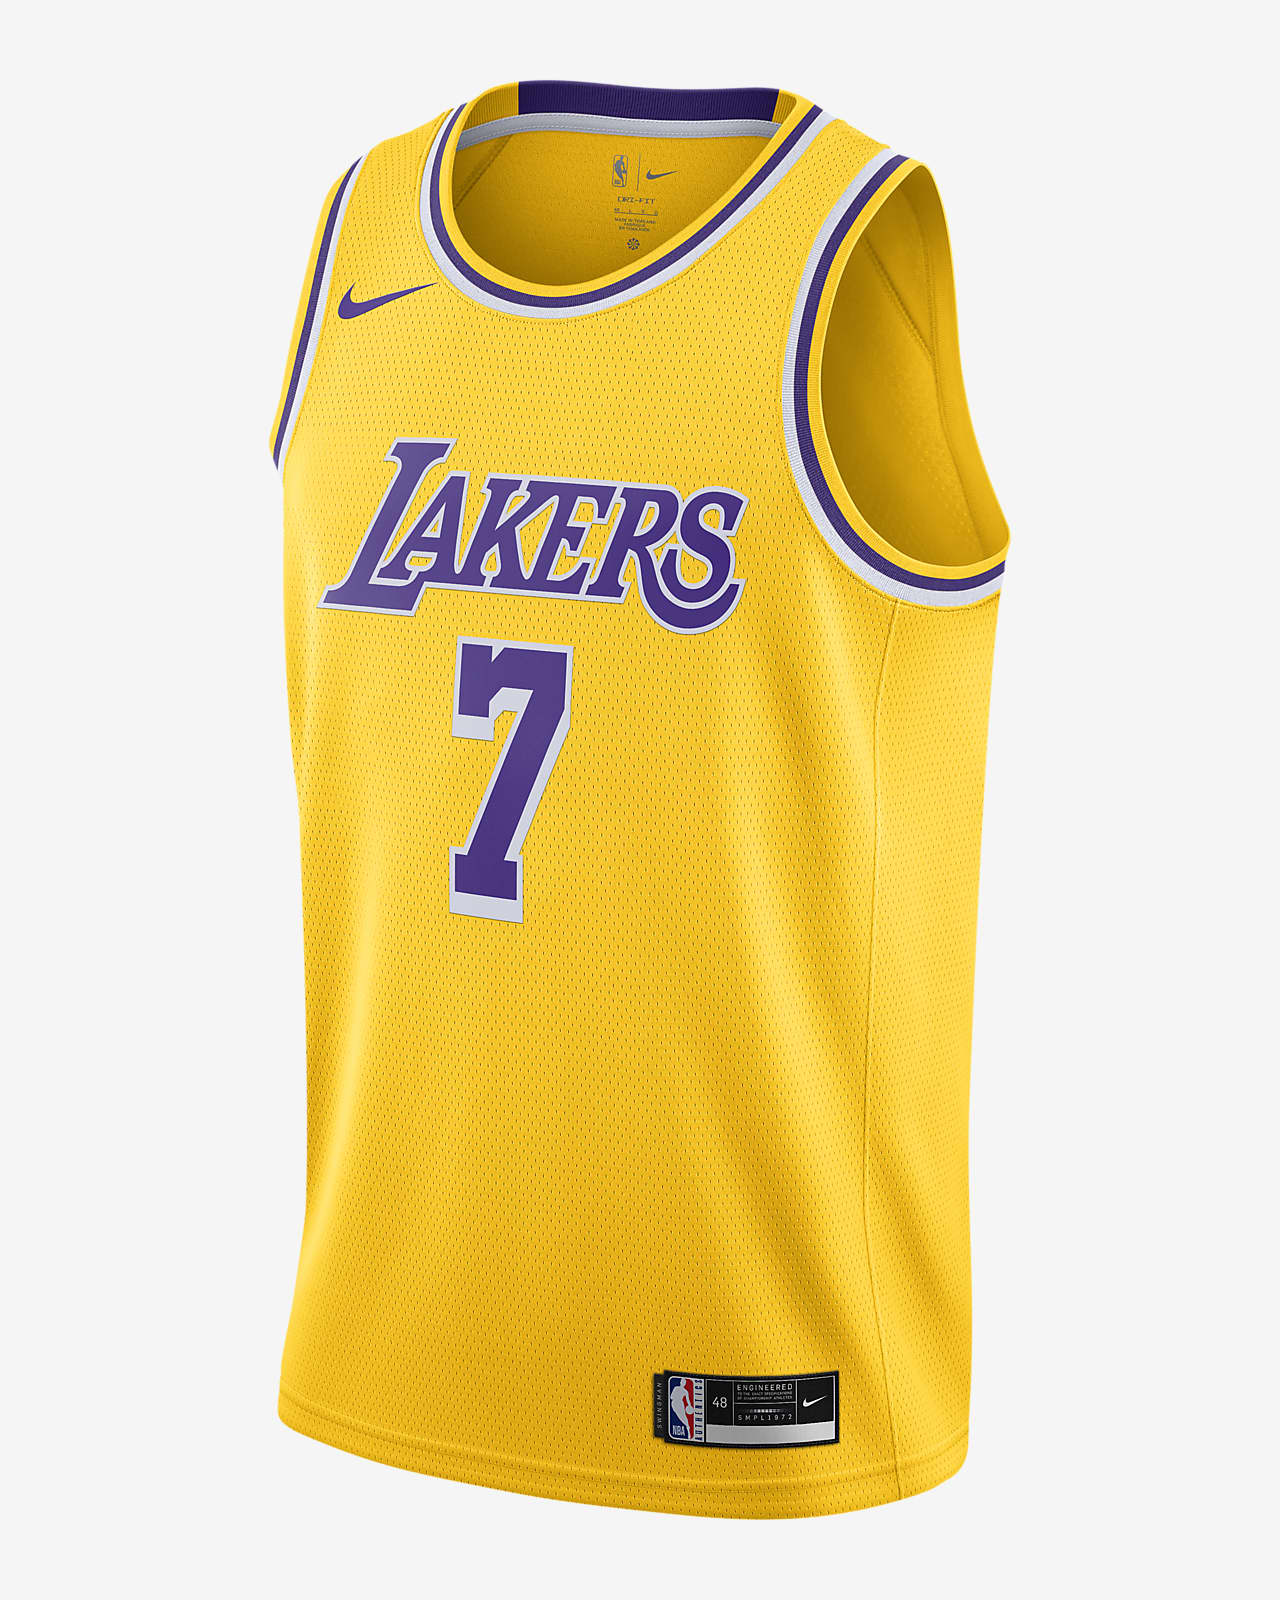 Lakers Icon Edition 2020 Nike NBA Swingman 球衣